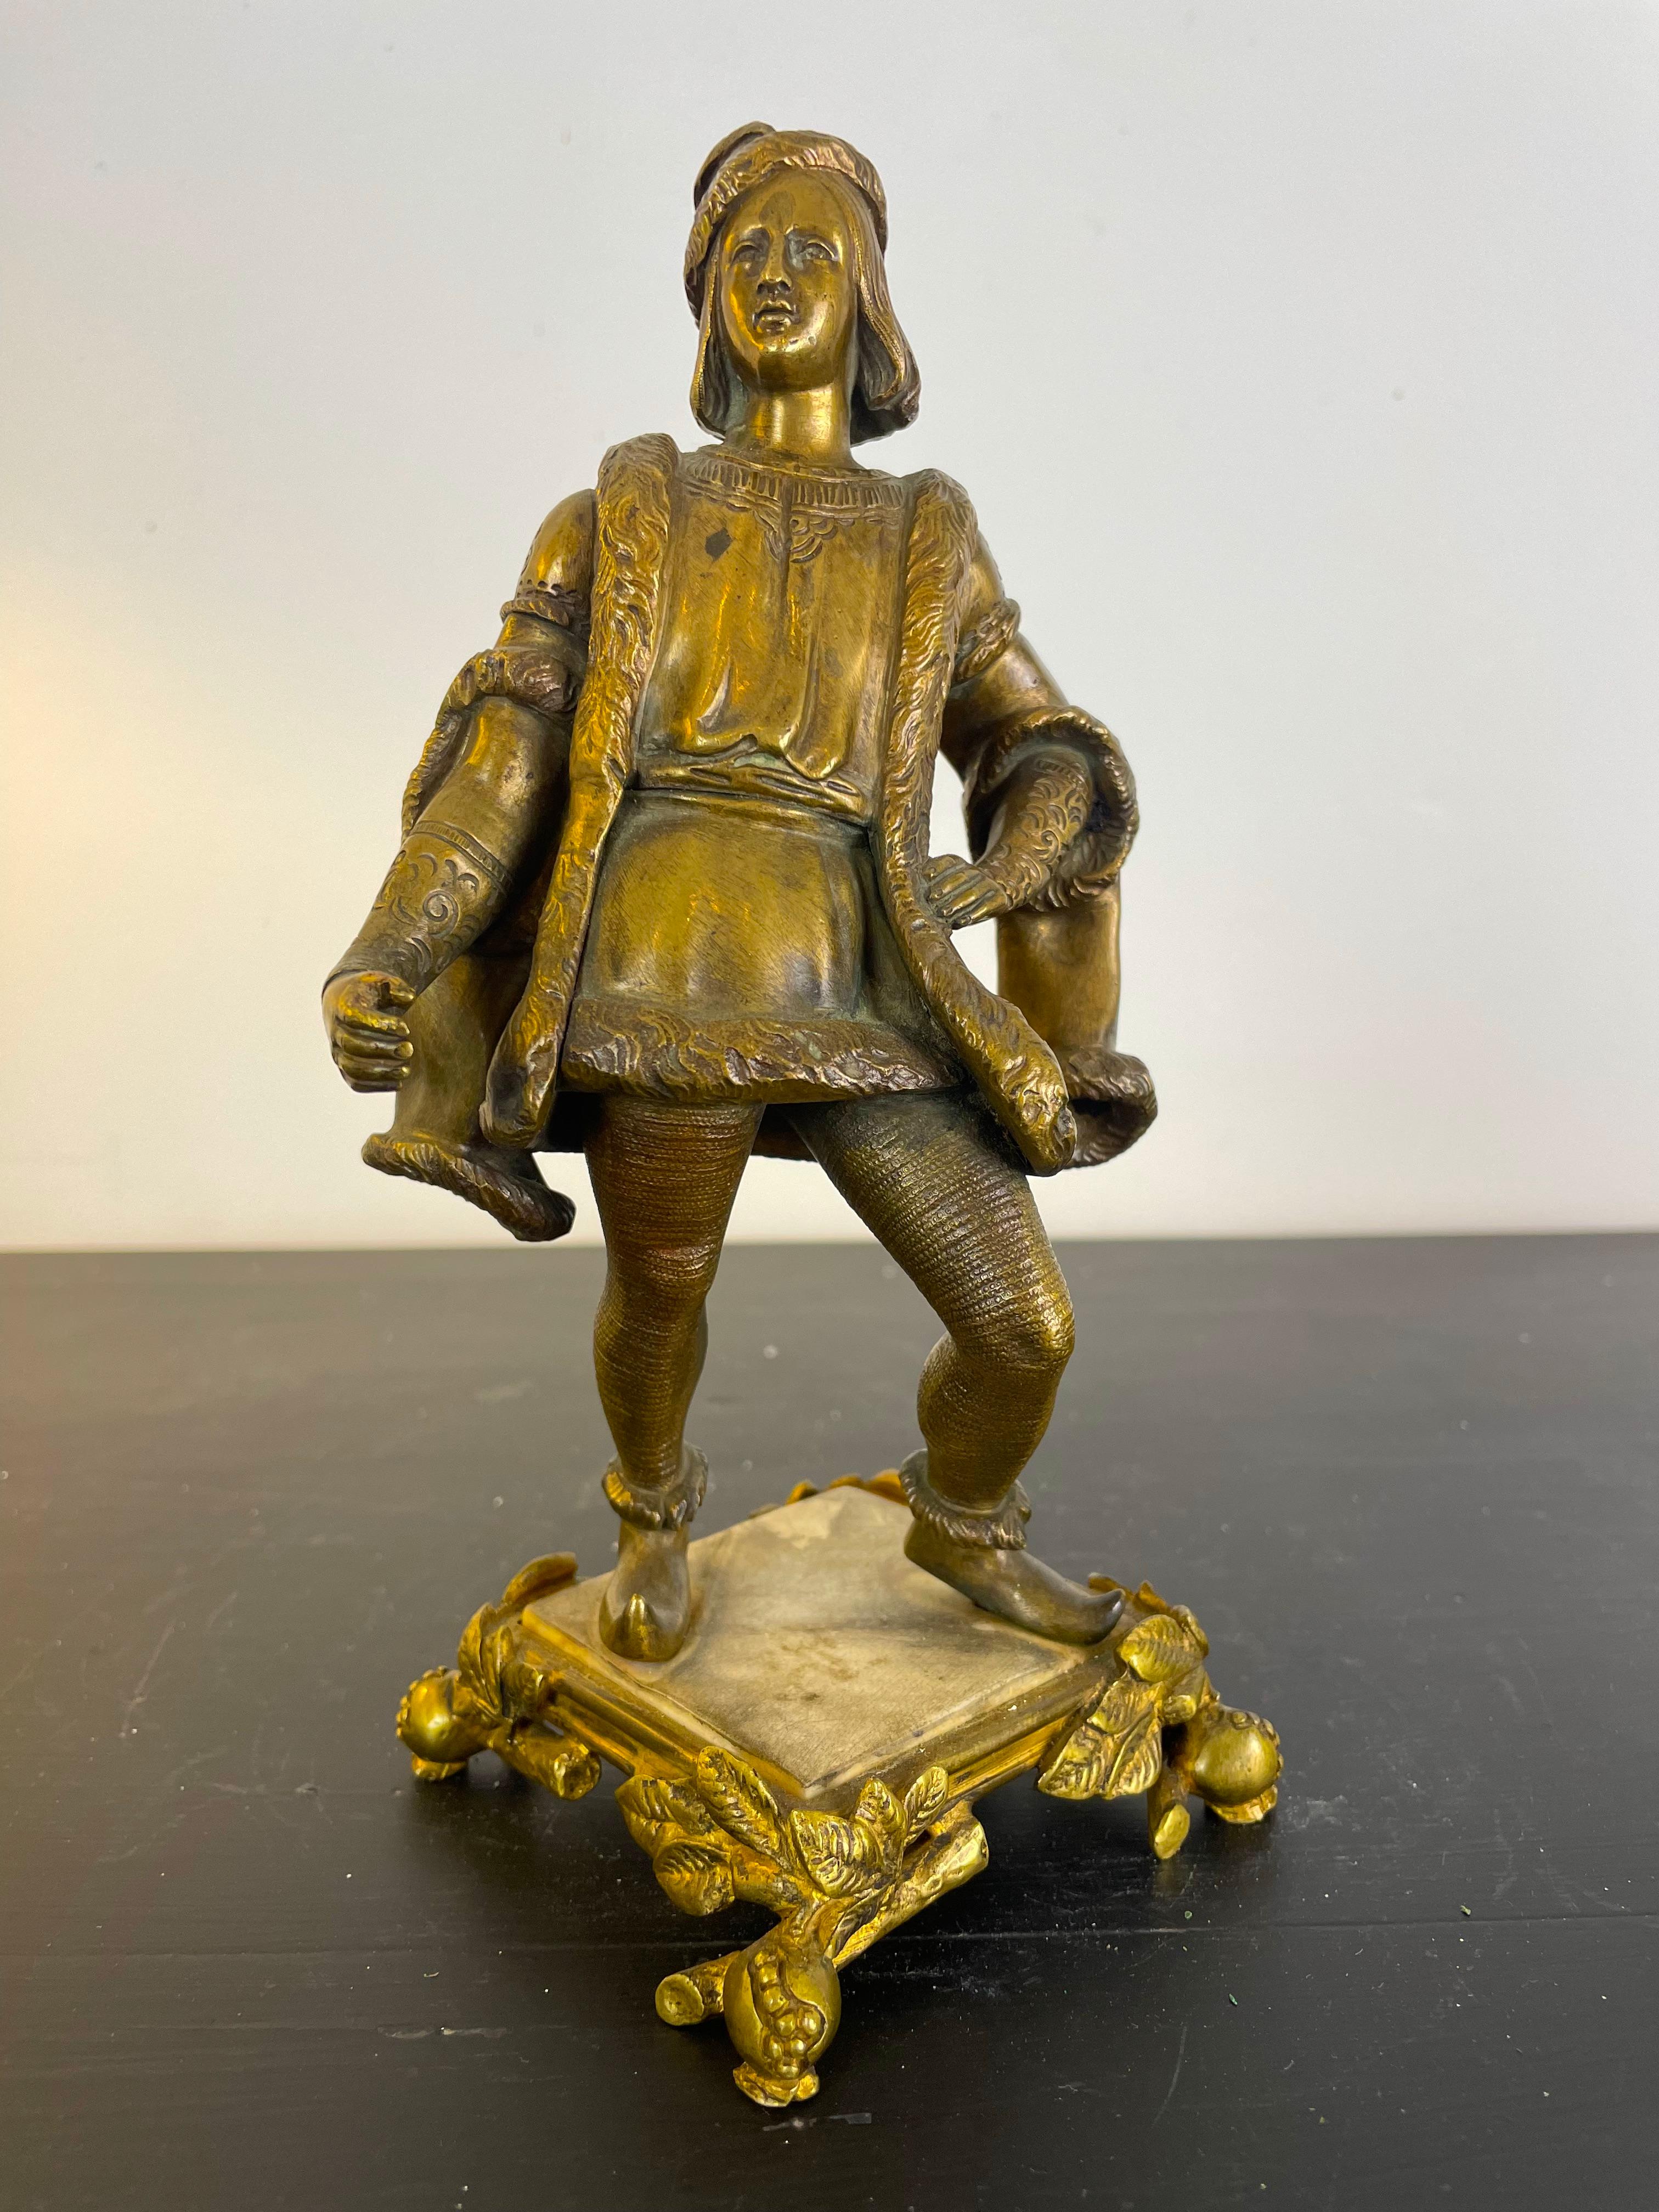 Sculpture en bronze doré représentant un jeune homme galant en costume Renaissance, dans le style du roi français Henri IV. Il est vêtu d'un doublet pour le haut, et par-dessus il porte un manteau de style casaque, porté largement ouvert, dont les